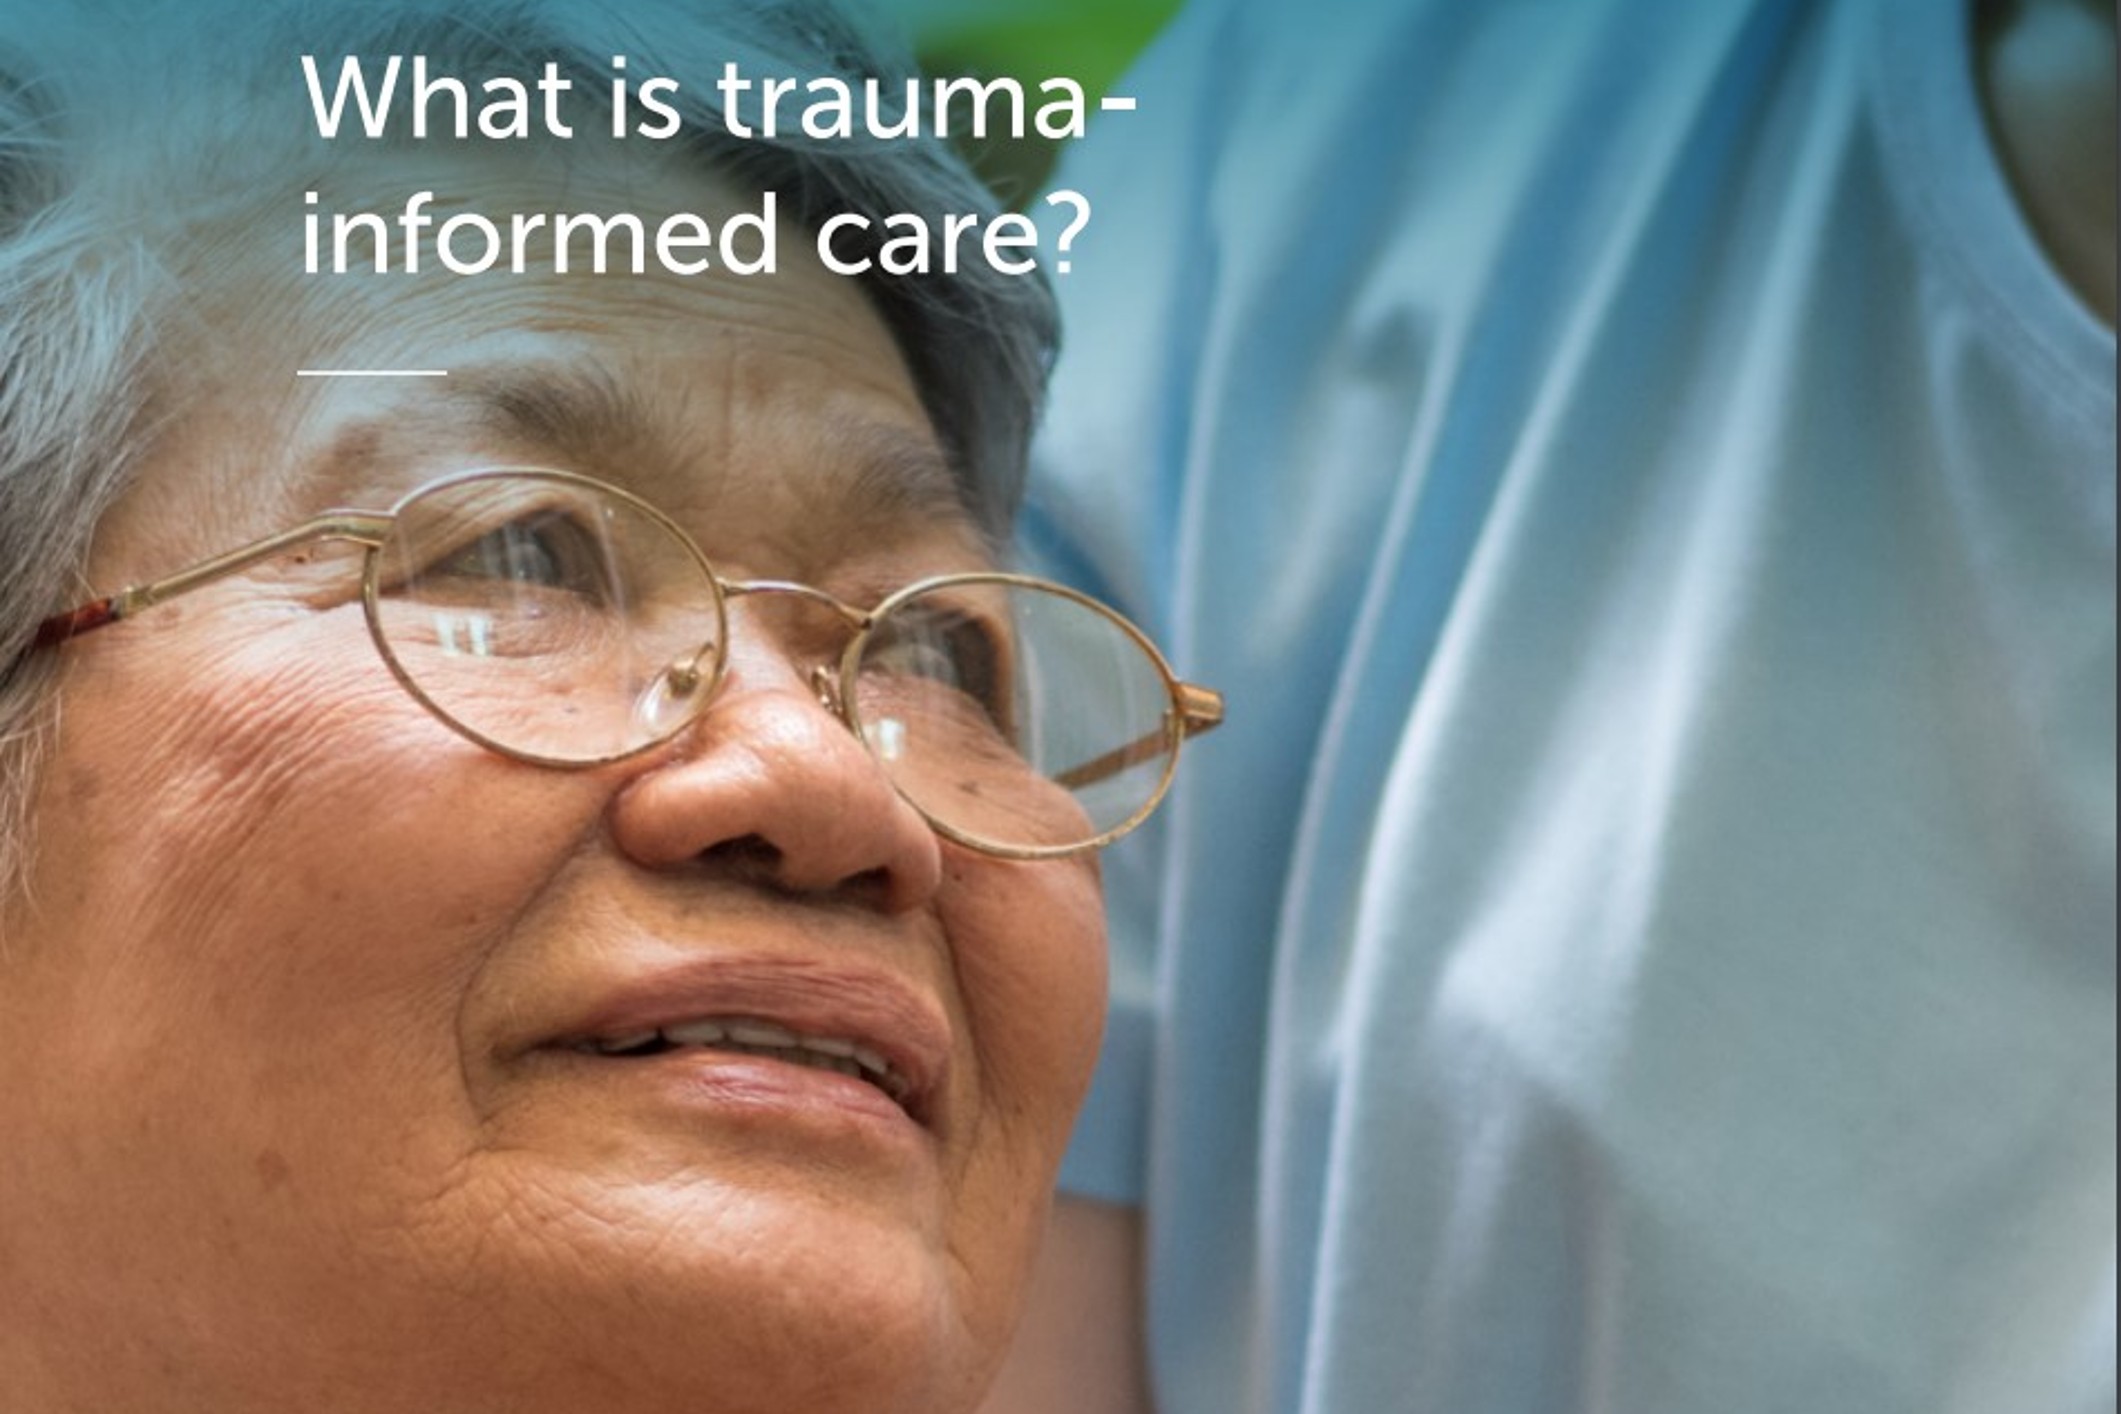 21_11_22 trauma informed care